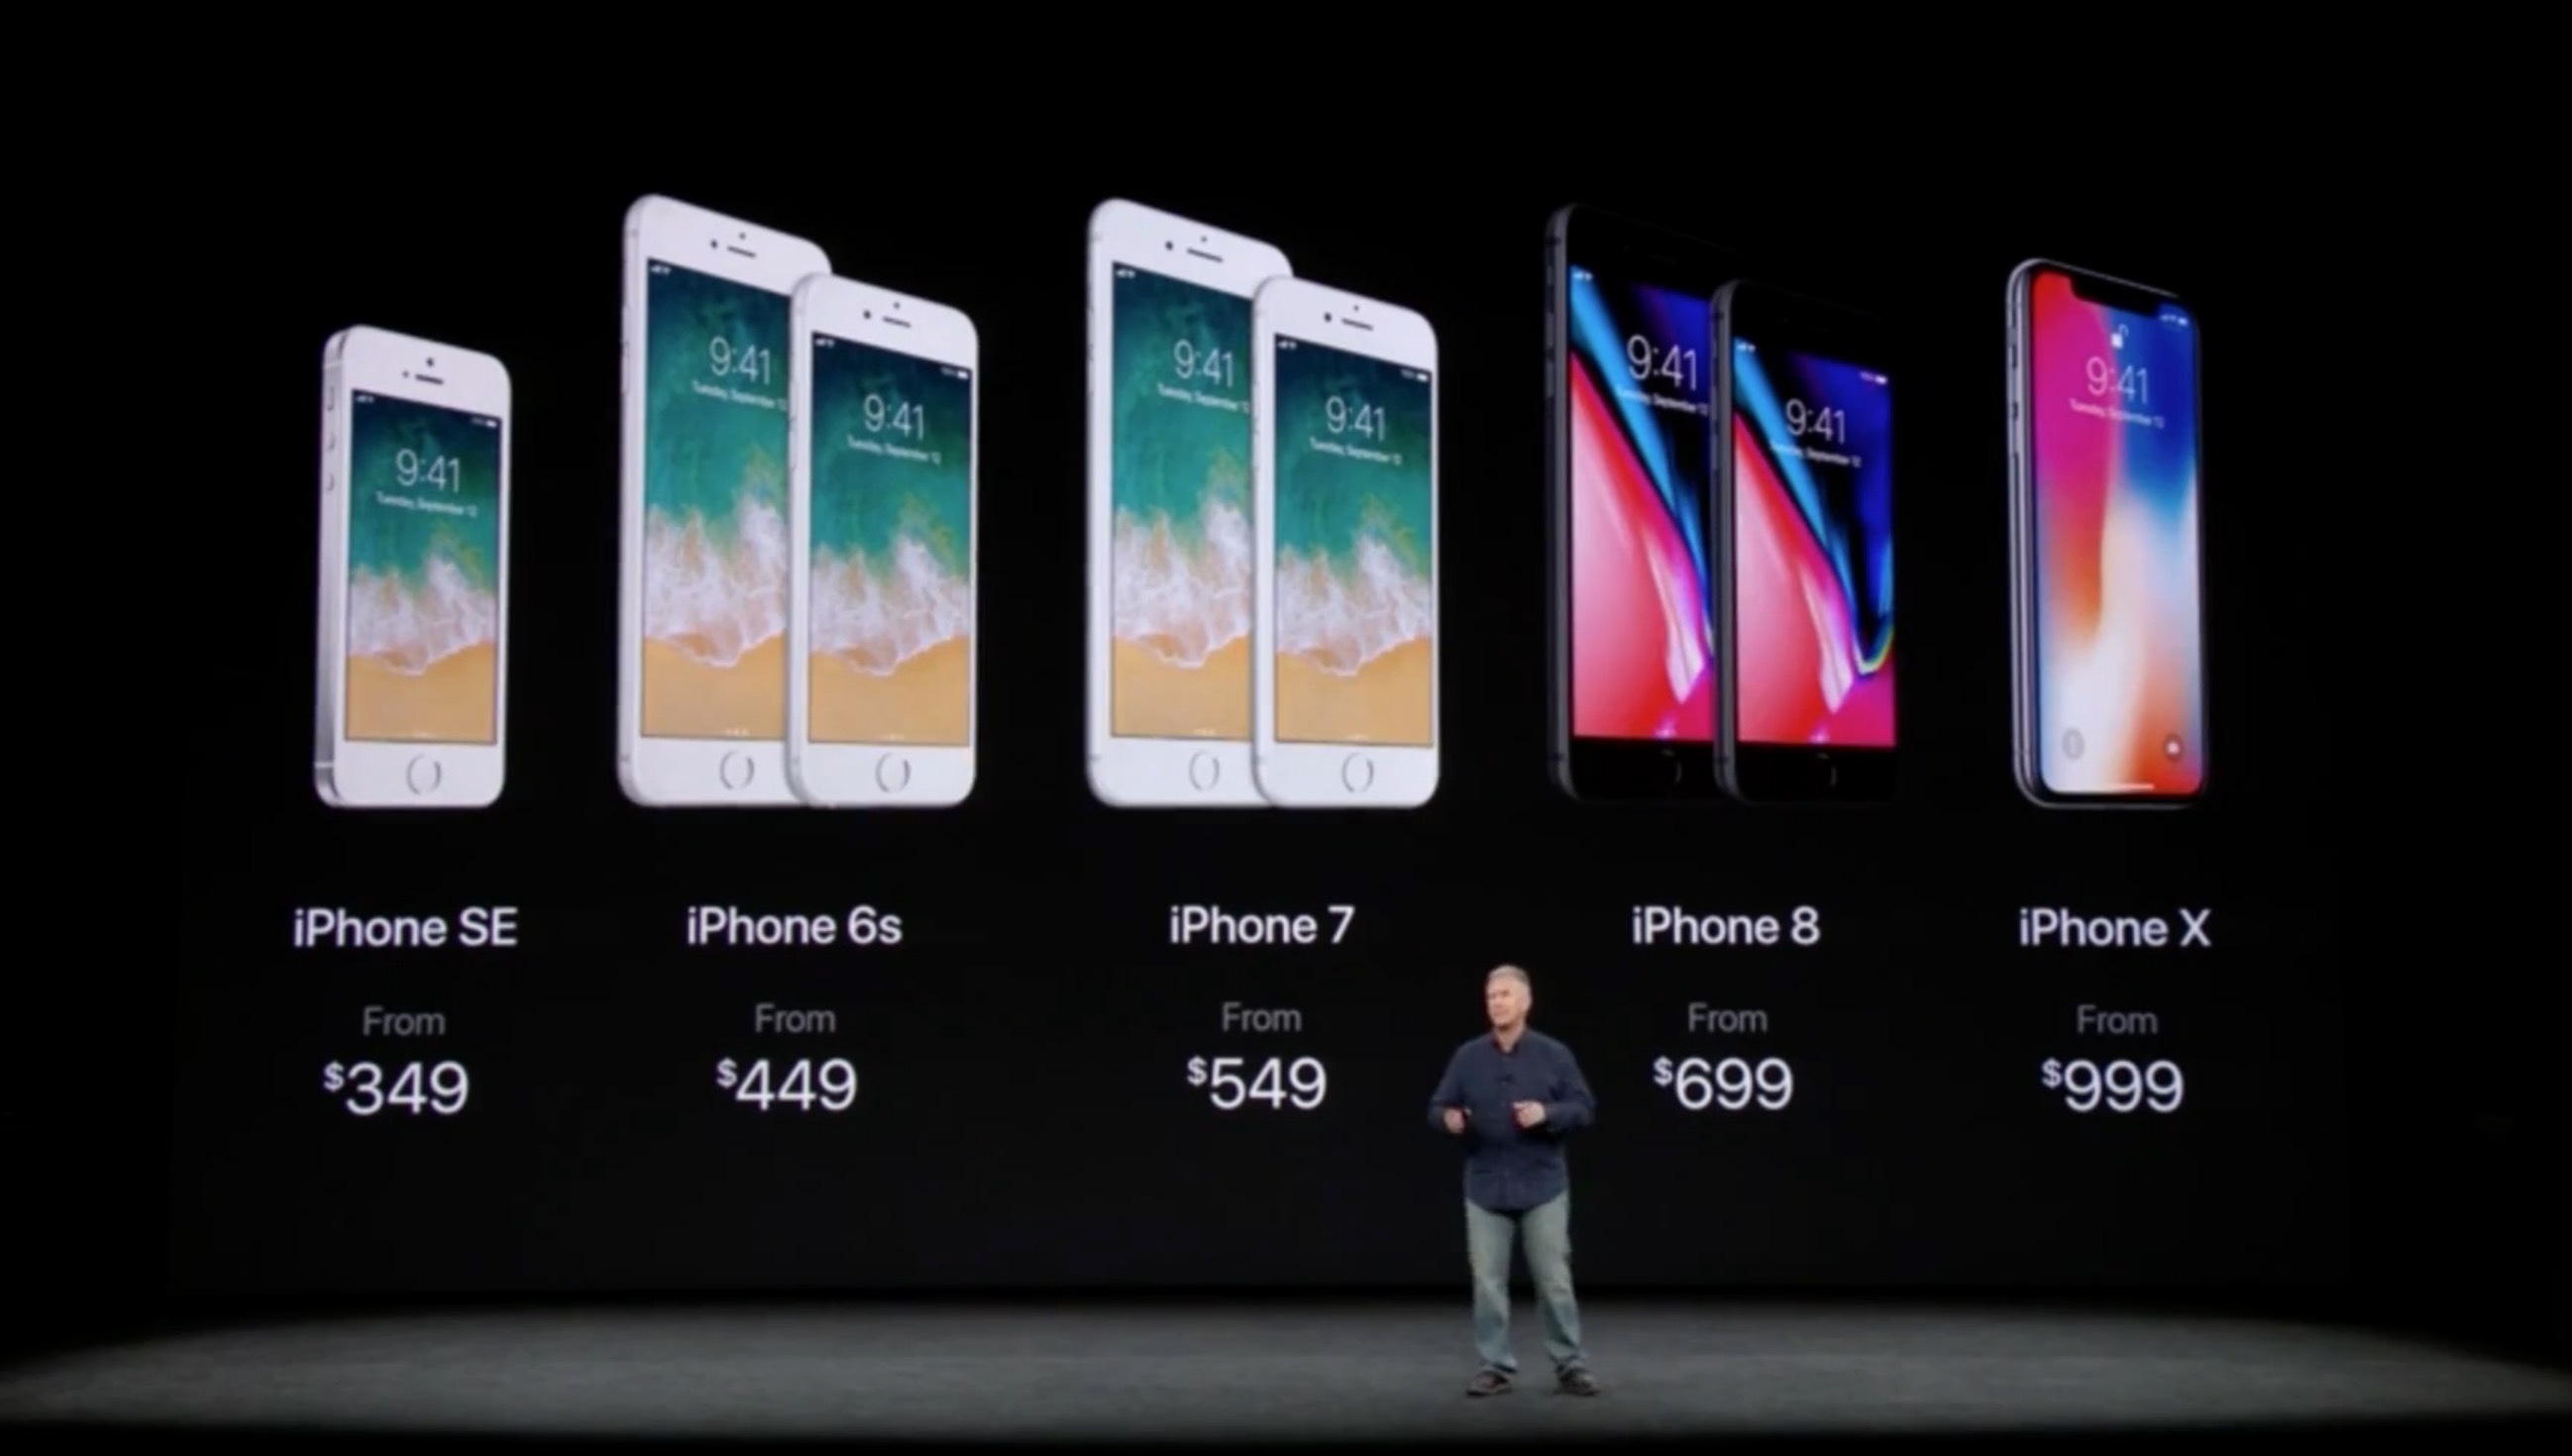 4分钟极速看苹果发布会:iphone x竟然卖9688元!